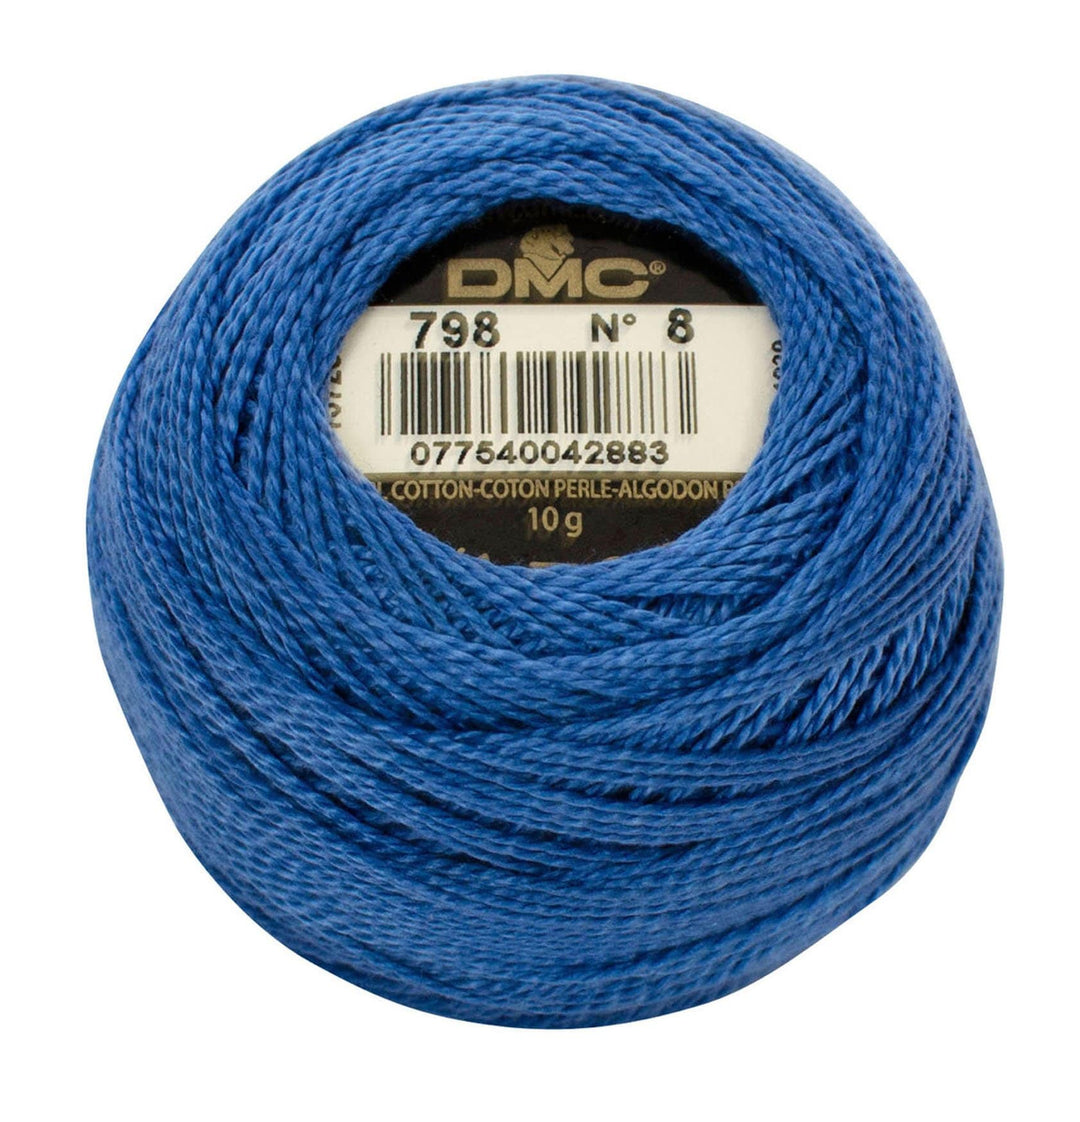 Size 8 Pearl Cotton Ball in Color 798 ~ Dark Delft Blue